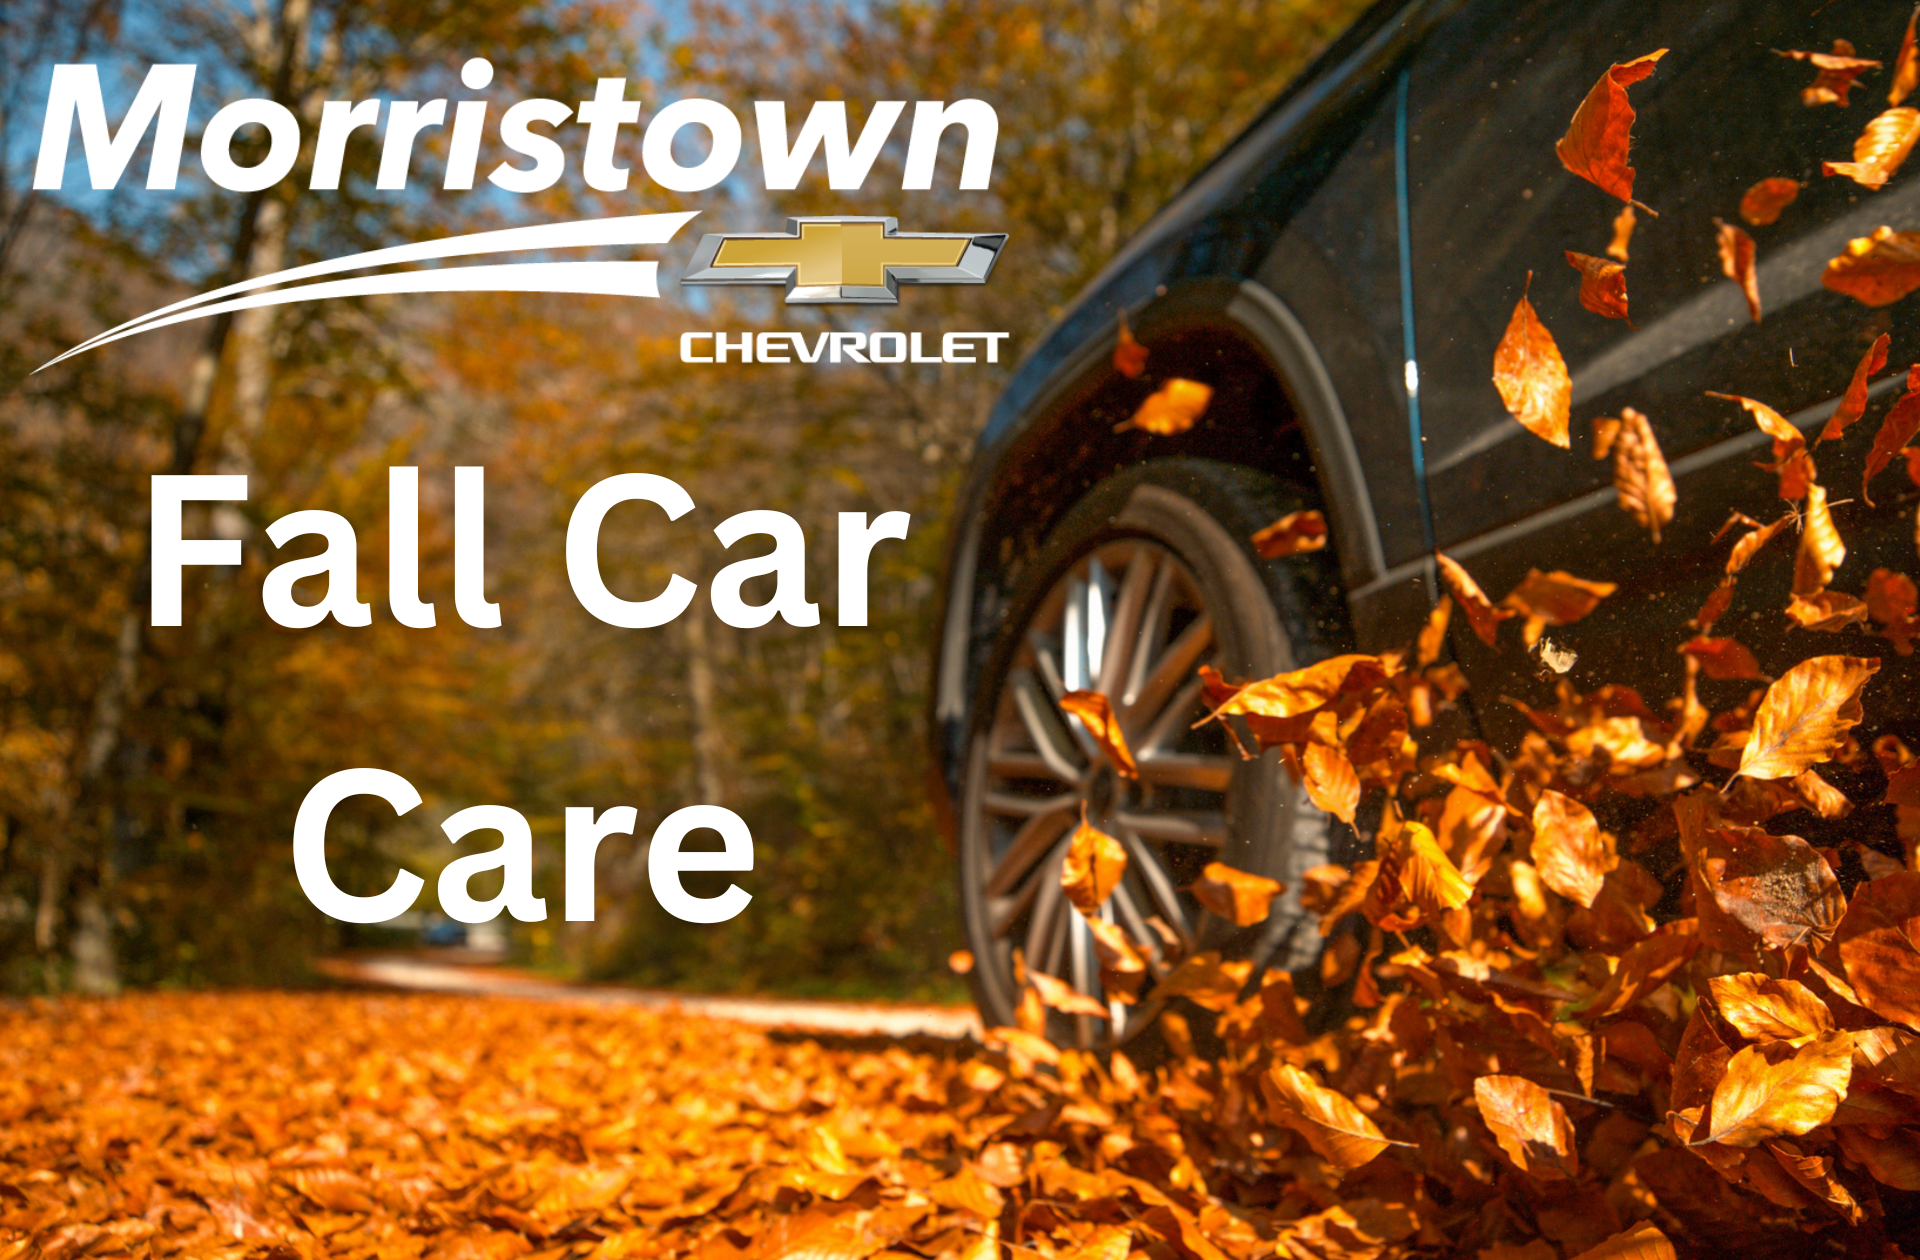 Morristown Chevrolet Blog – Morristown Chevrolet Blog